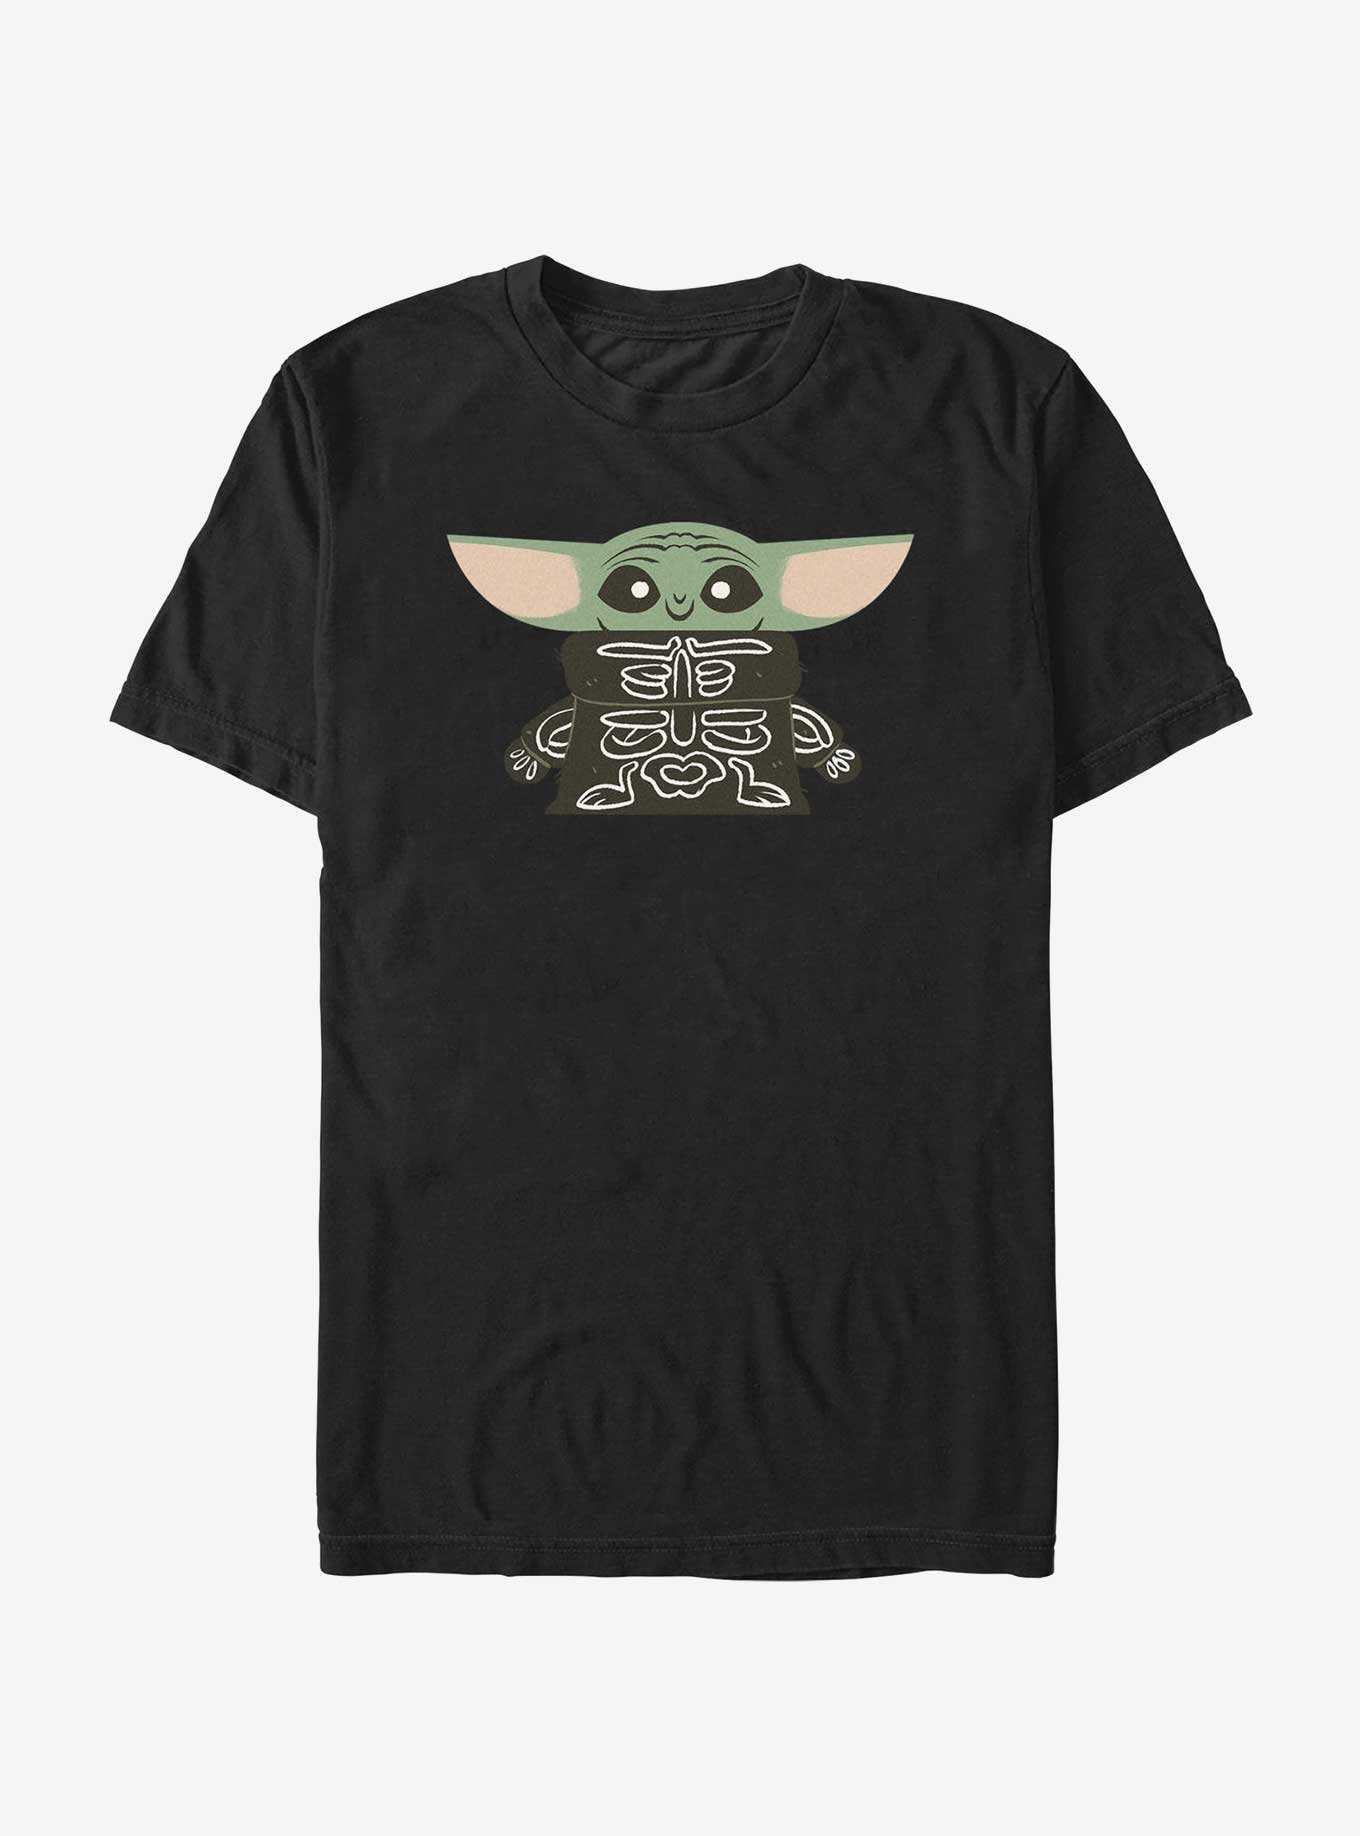 Star Wars The Mandalorian Skeleton Grogu T-Shirt, , hi-res